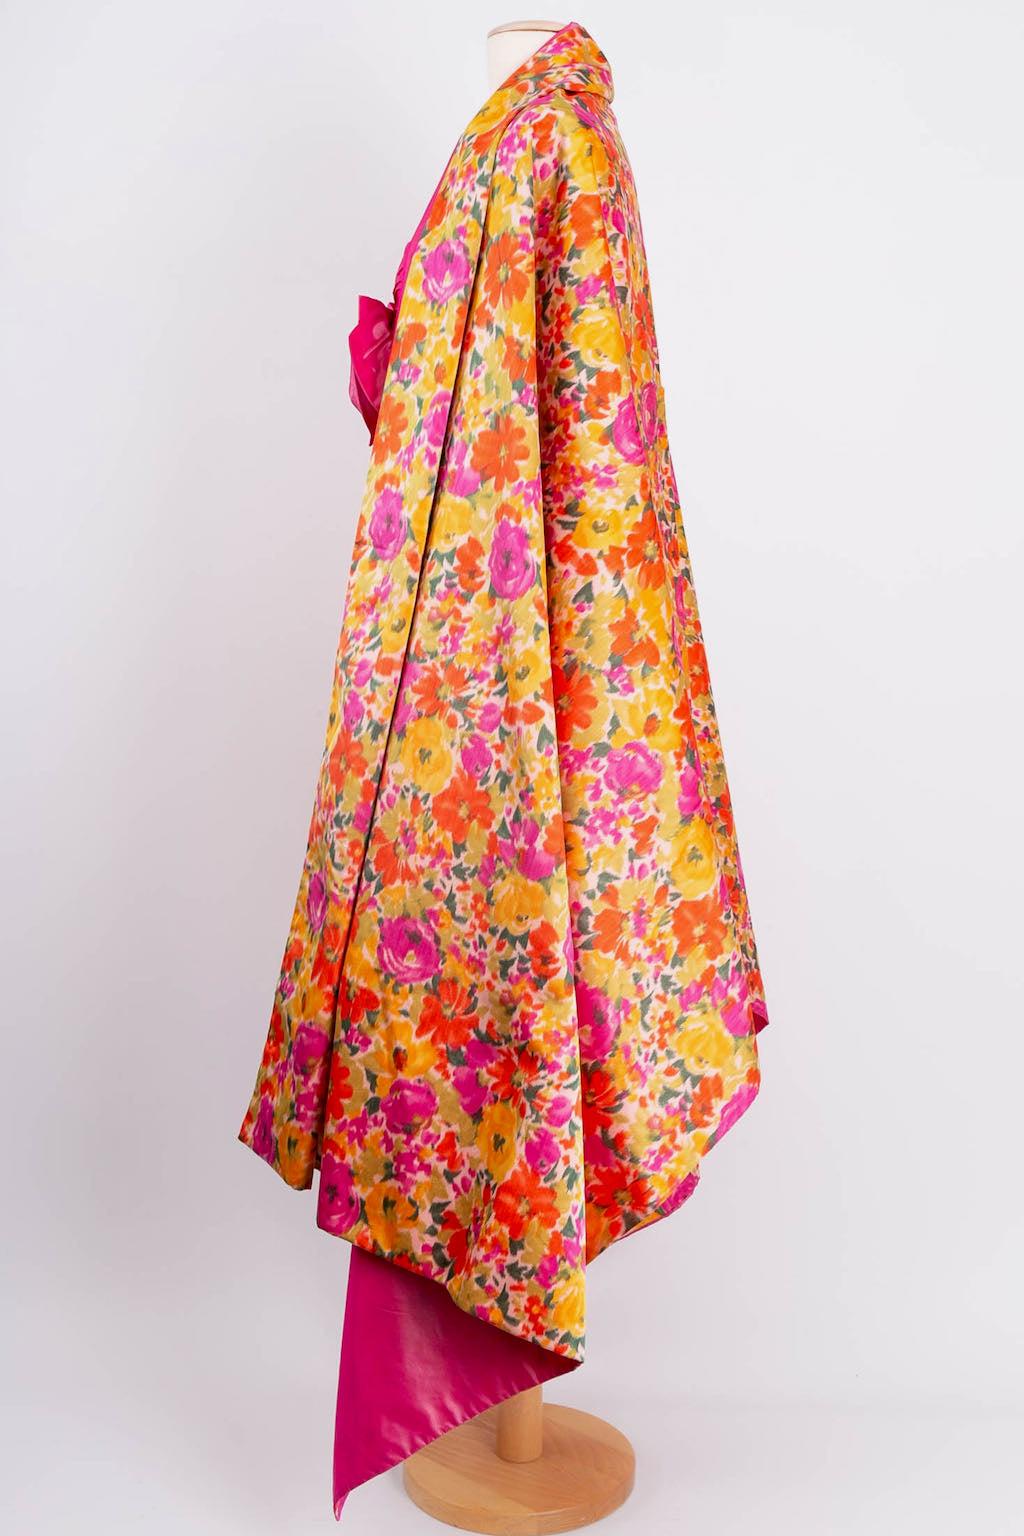 Nina Ricci (Made in France) Kurzes Kleid aus Seide, ergänzt durch eine Stola. Keine Zusammensetzung oder Größe Tag, es passen eine Größe 38FR.

Zusätzliche Informationen: 
Abmessungen: Brustumfang: 40 cm (15.74